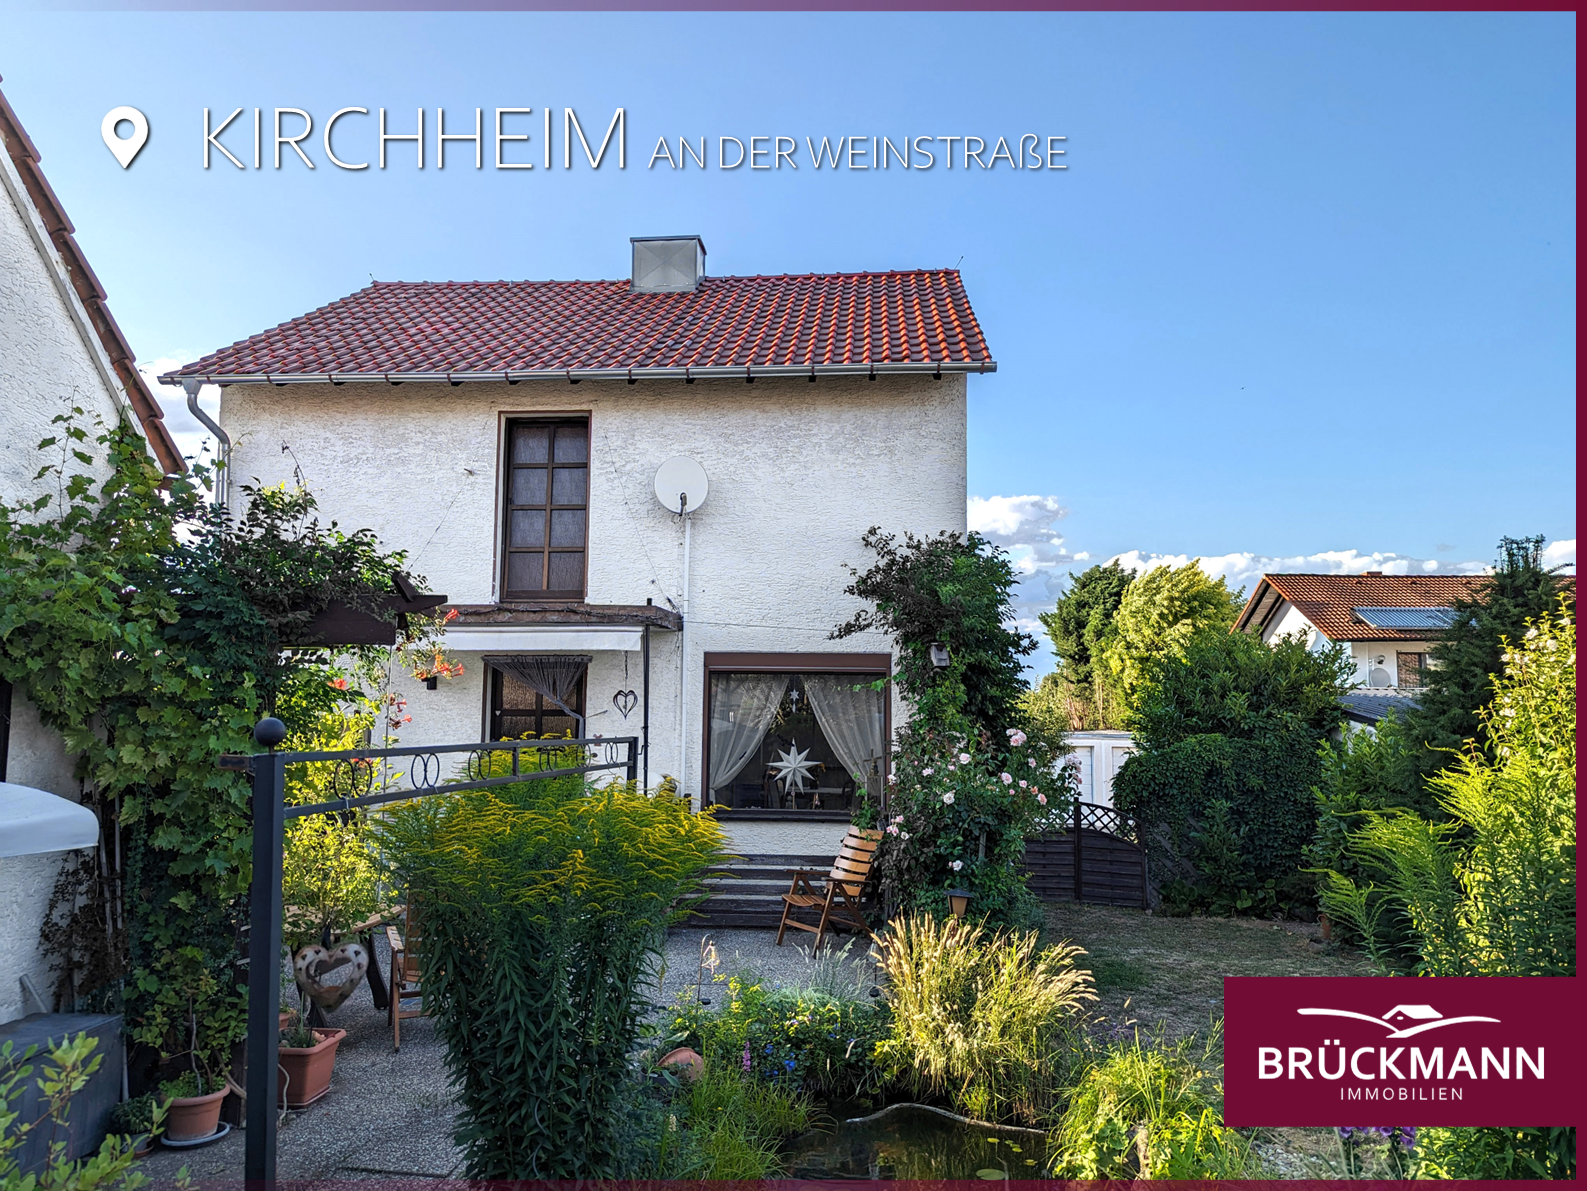 Einfach schöner leben mit Garten! 💚, 67281 Kirchheim, Einfamilienhaus